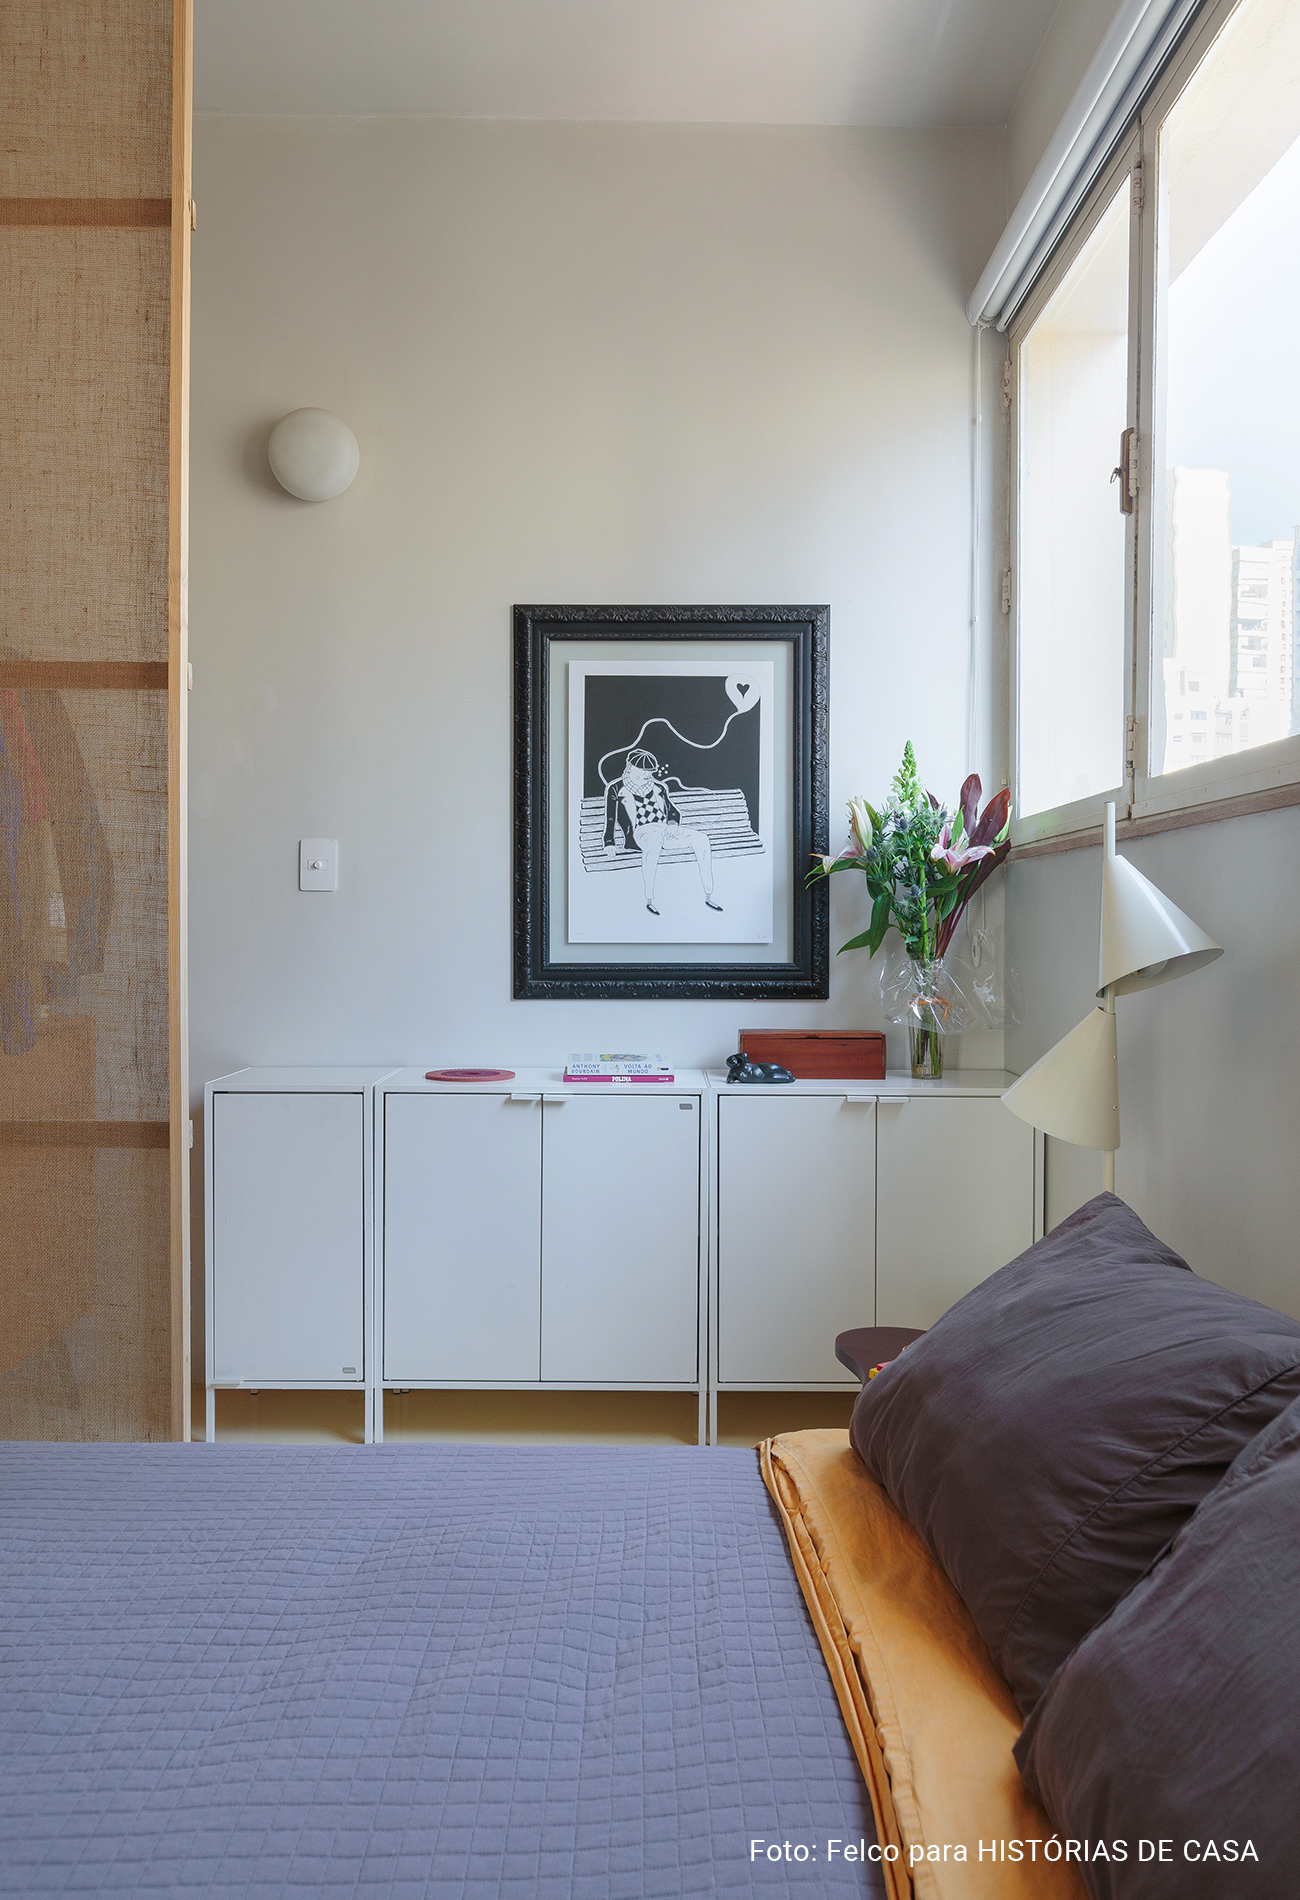 Apartamento pequeno com janelão e boas ideias para otimizar espaço